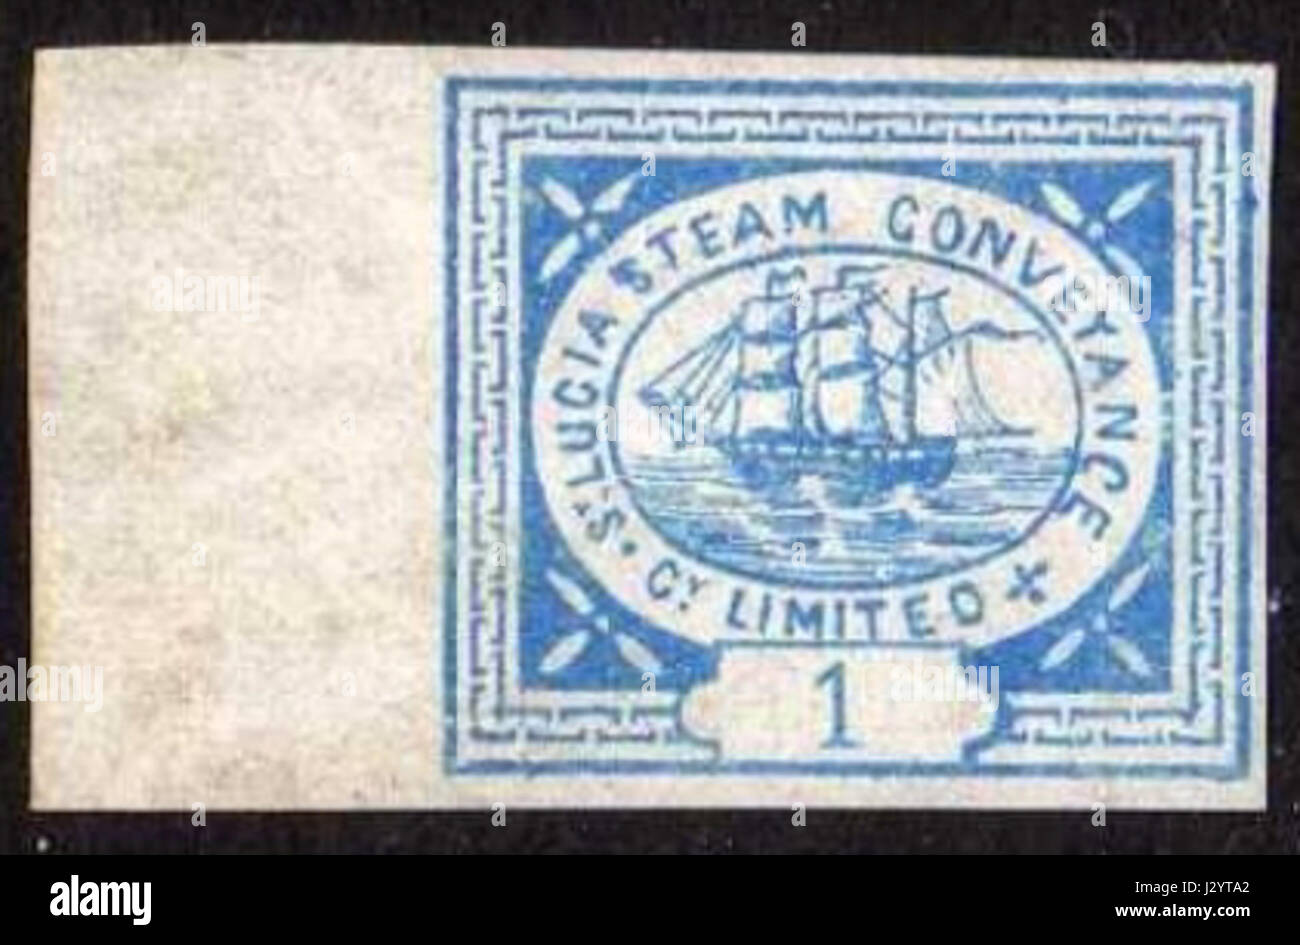 C. 1872 St. Lucia Steam Transport Company begrenzte 1 Cent Briefmarke Stockfoto